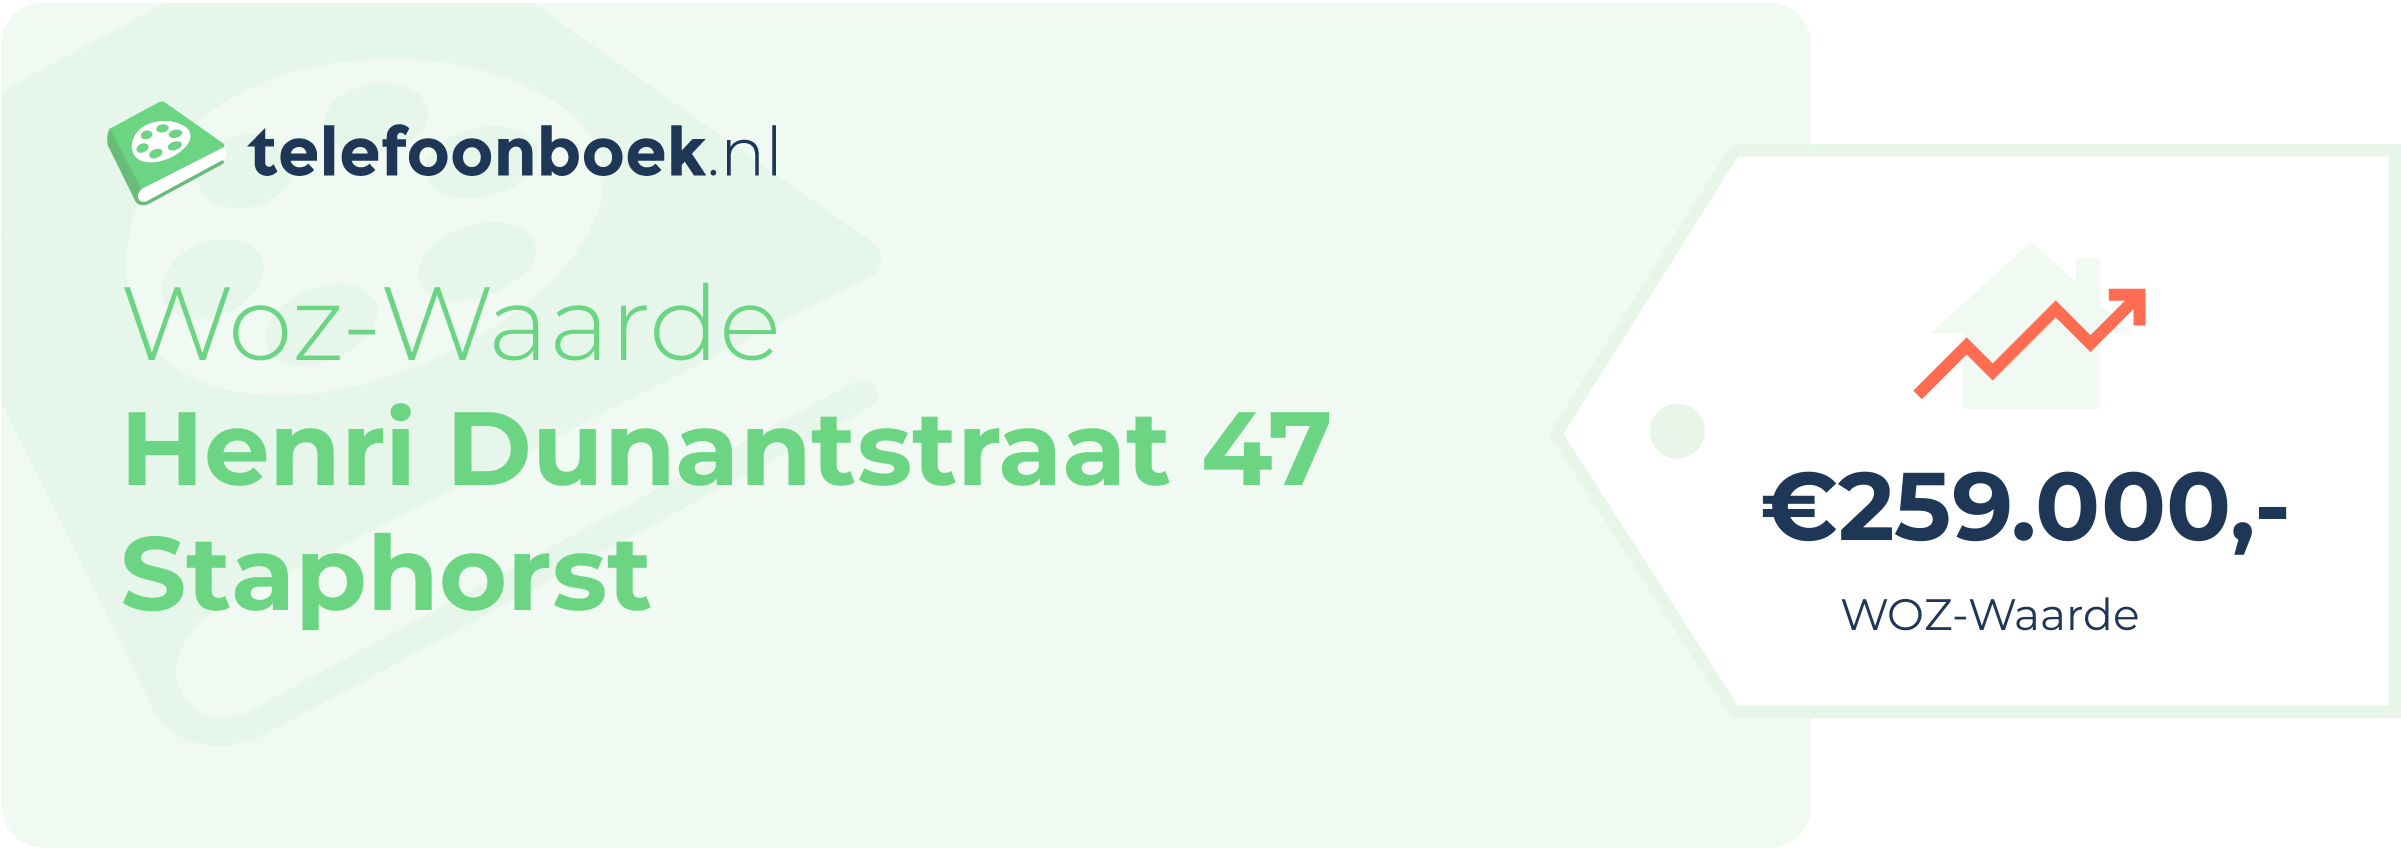 WOZ-waarde Henri Dunantstraat 47 Staphorst